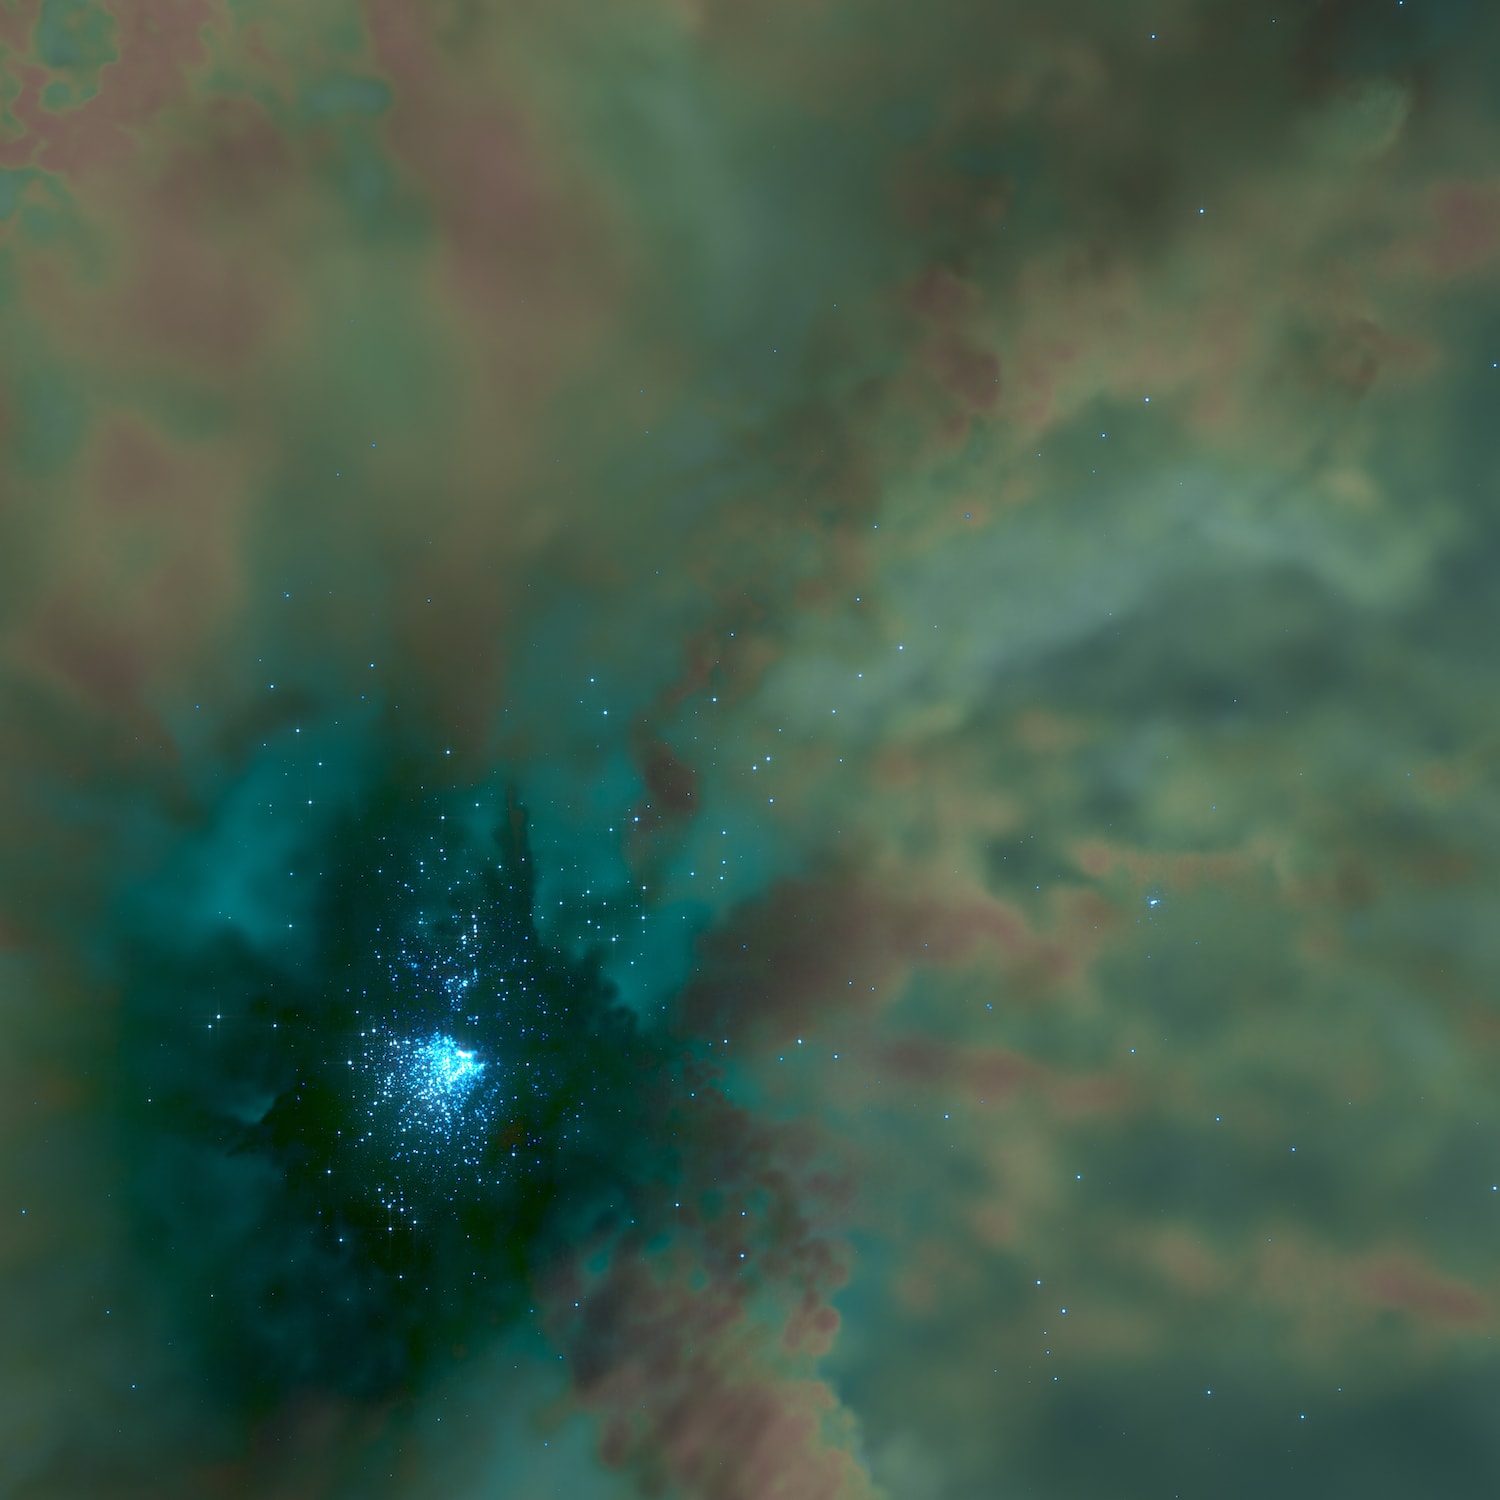 図1．シミュレーションで再現された形成中の球状星団。左下の青白い点一つ一つが星団の星を表し、その周りの“もや”は星間ガスを表す。色は温度を表していて、暗い部分が温度の低い星間ガス（分子雲）、明るい部分が温度の高い星間ガスを表す。可視化：武田隆顕（ヴェイサエンターテイメント株式会社）。（Credit: 藤井通子、武田隆顕）